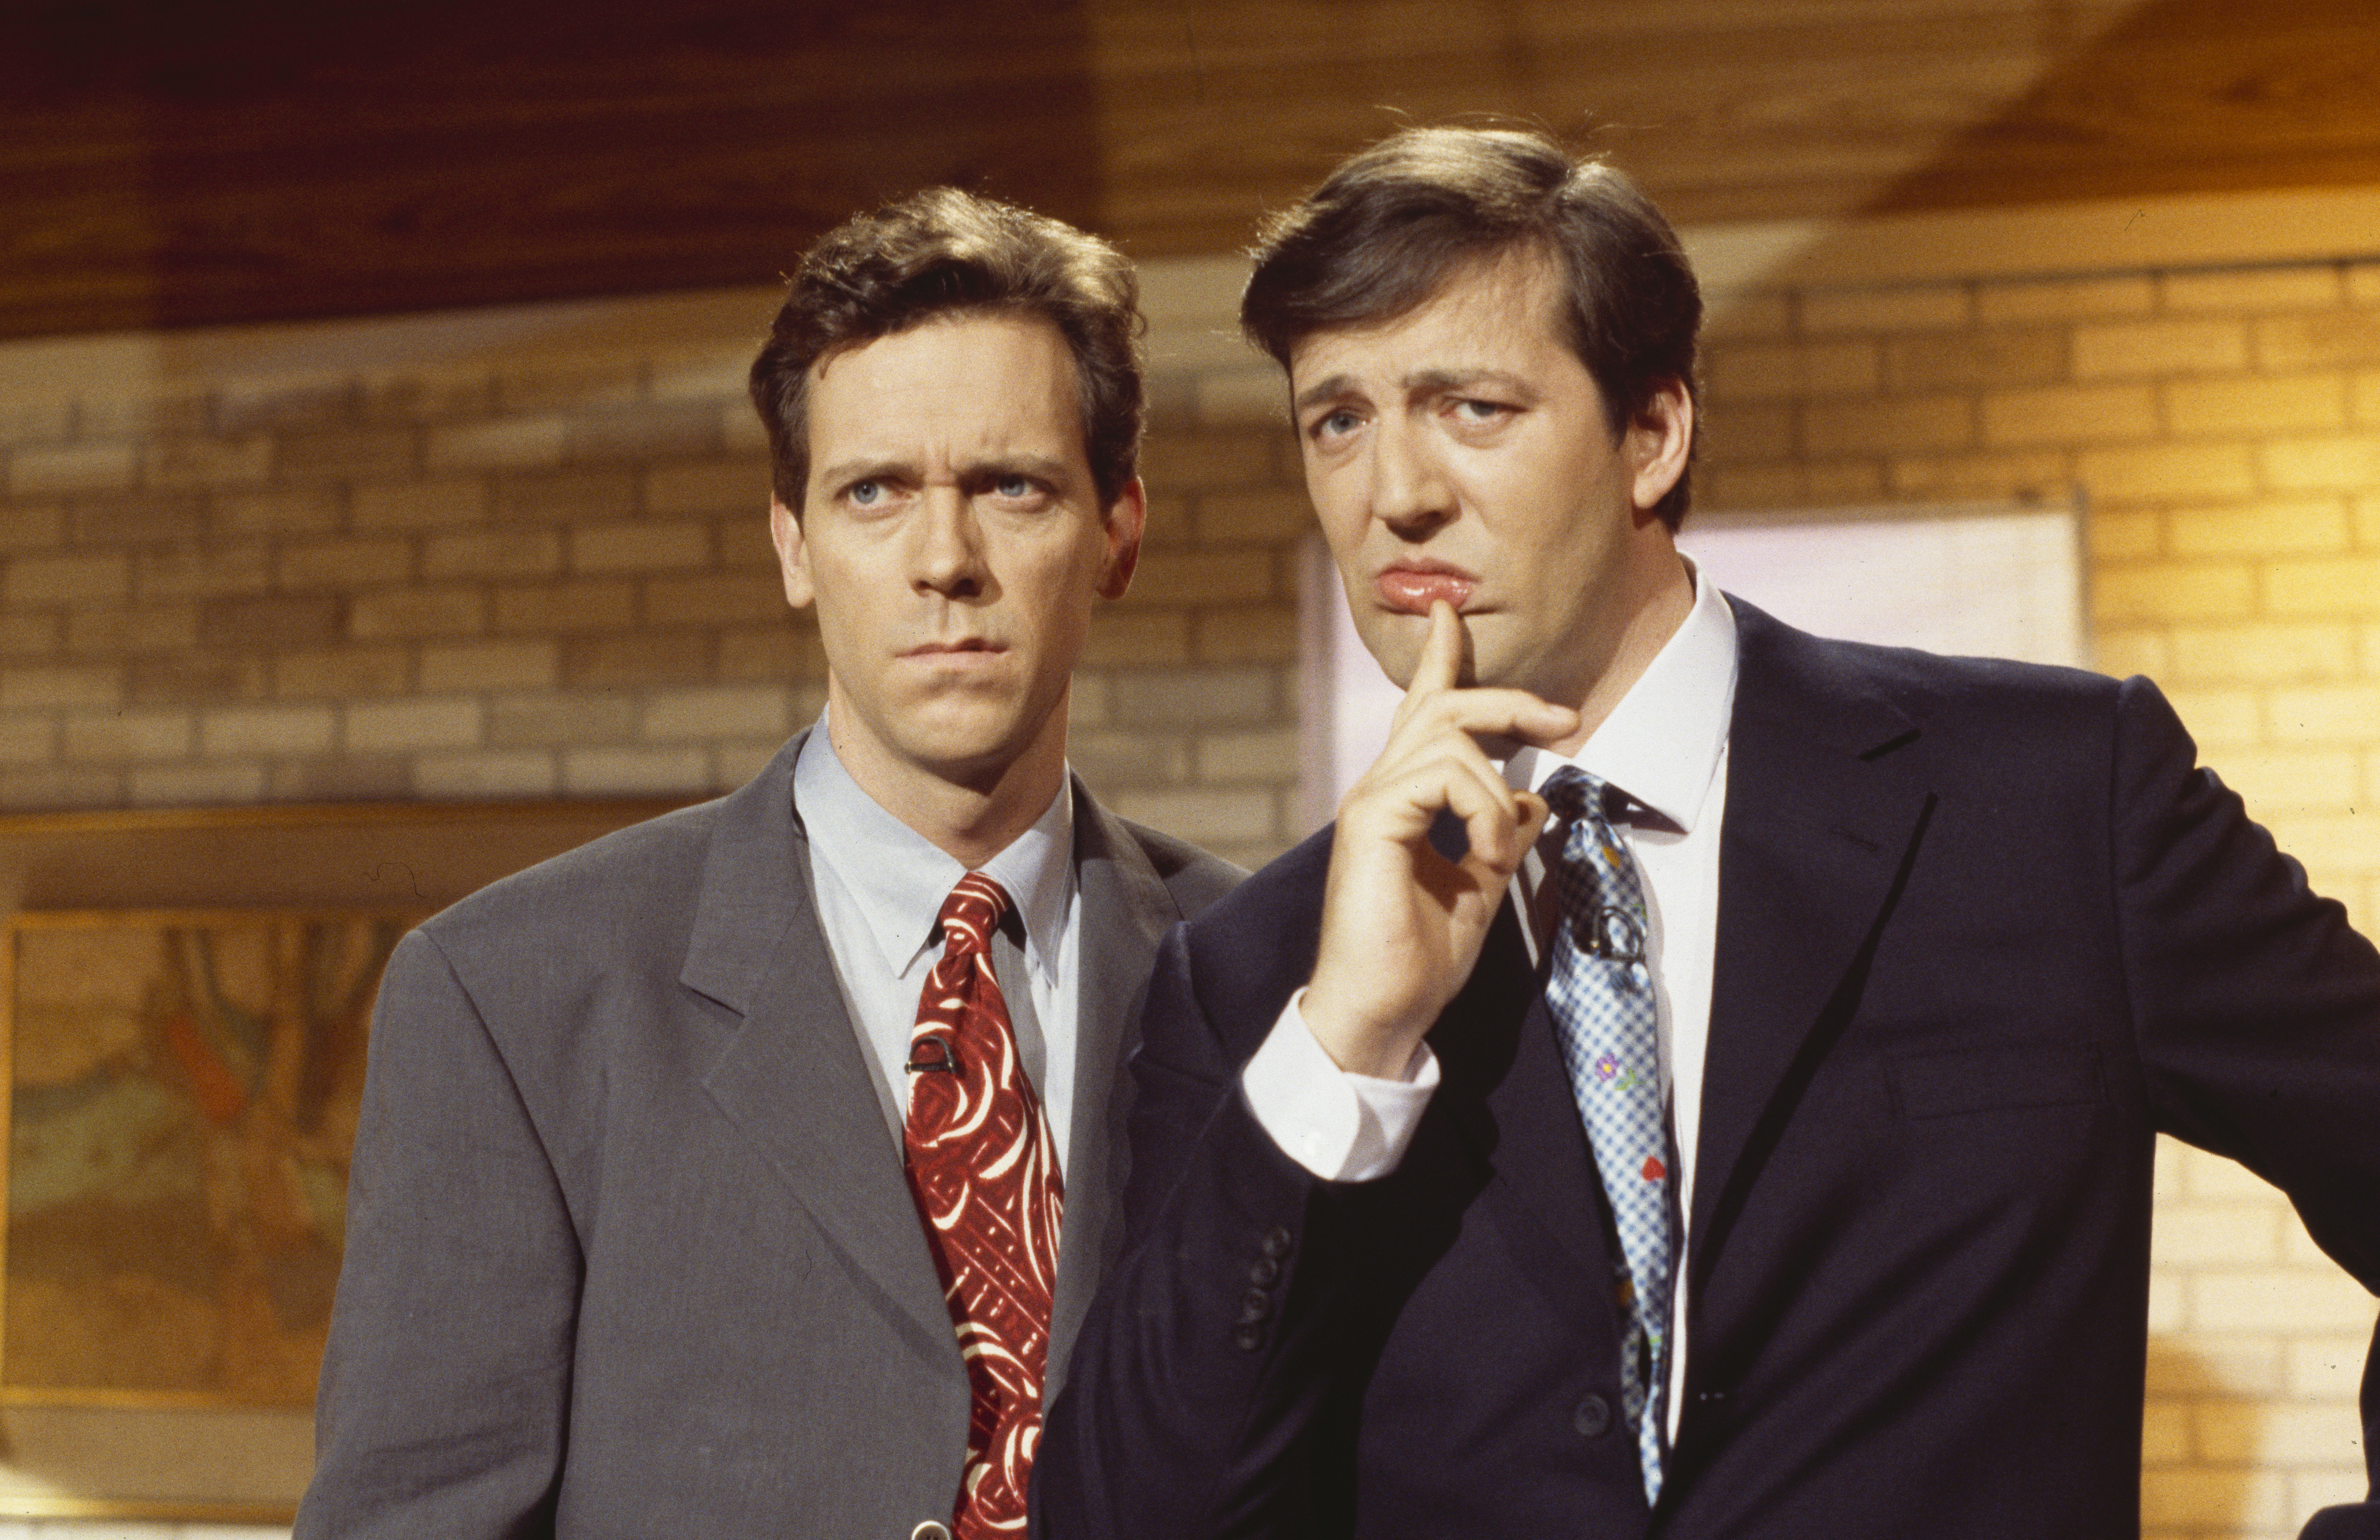 Hugh Laurie y Stephen Fry en un sketch de la serie de televisión de la BBC "A Bit of Fry and Laurie", el 29 de marzo de 1994. | Foto: Getty Images